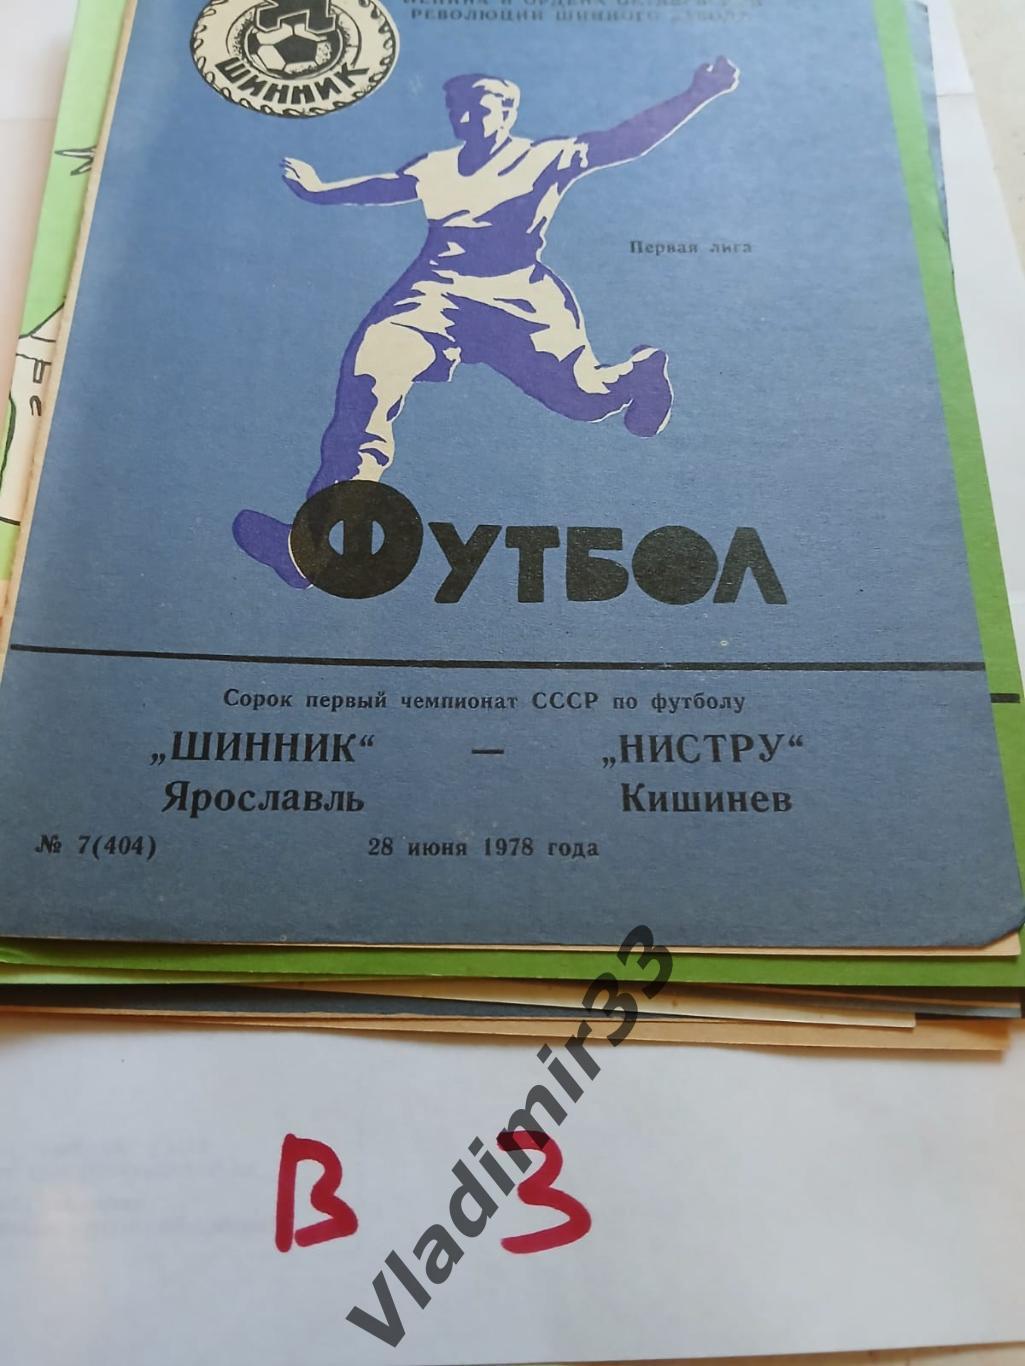 Шинник Ярославль - Нистру Кишинёв 1978